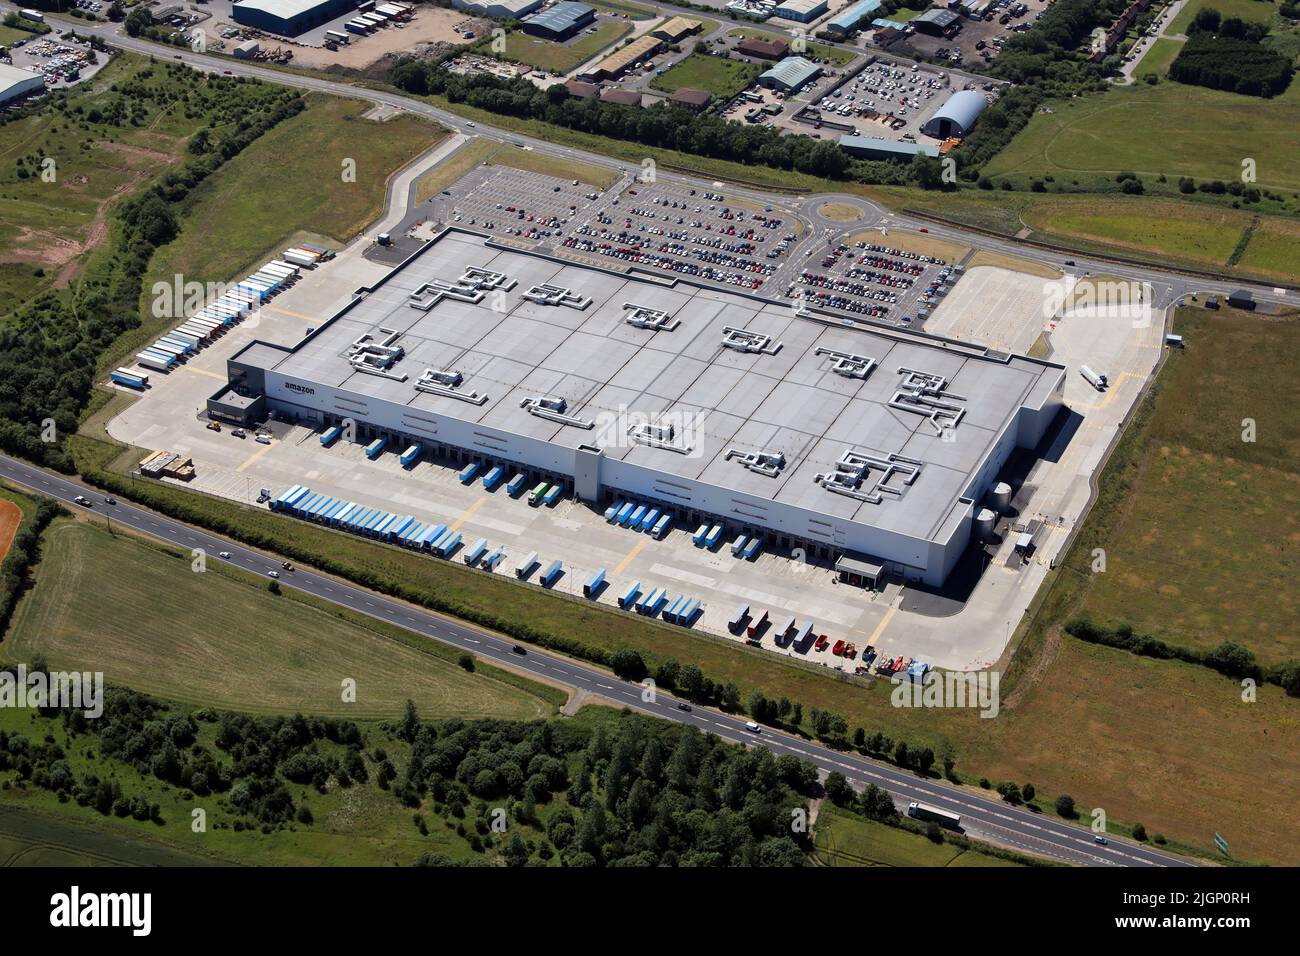 Vista aerea del magazzino Amazon UK Services MME1 a Darlington, County Durham. Questo mostra il lato est - la parte anteriore dell'edificio con il A66. Foto Stock